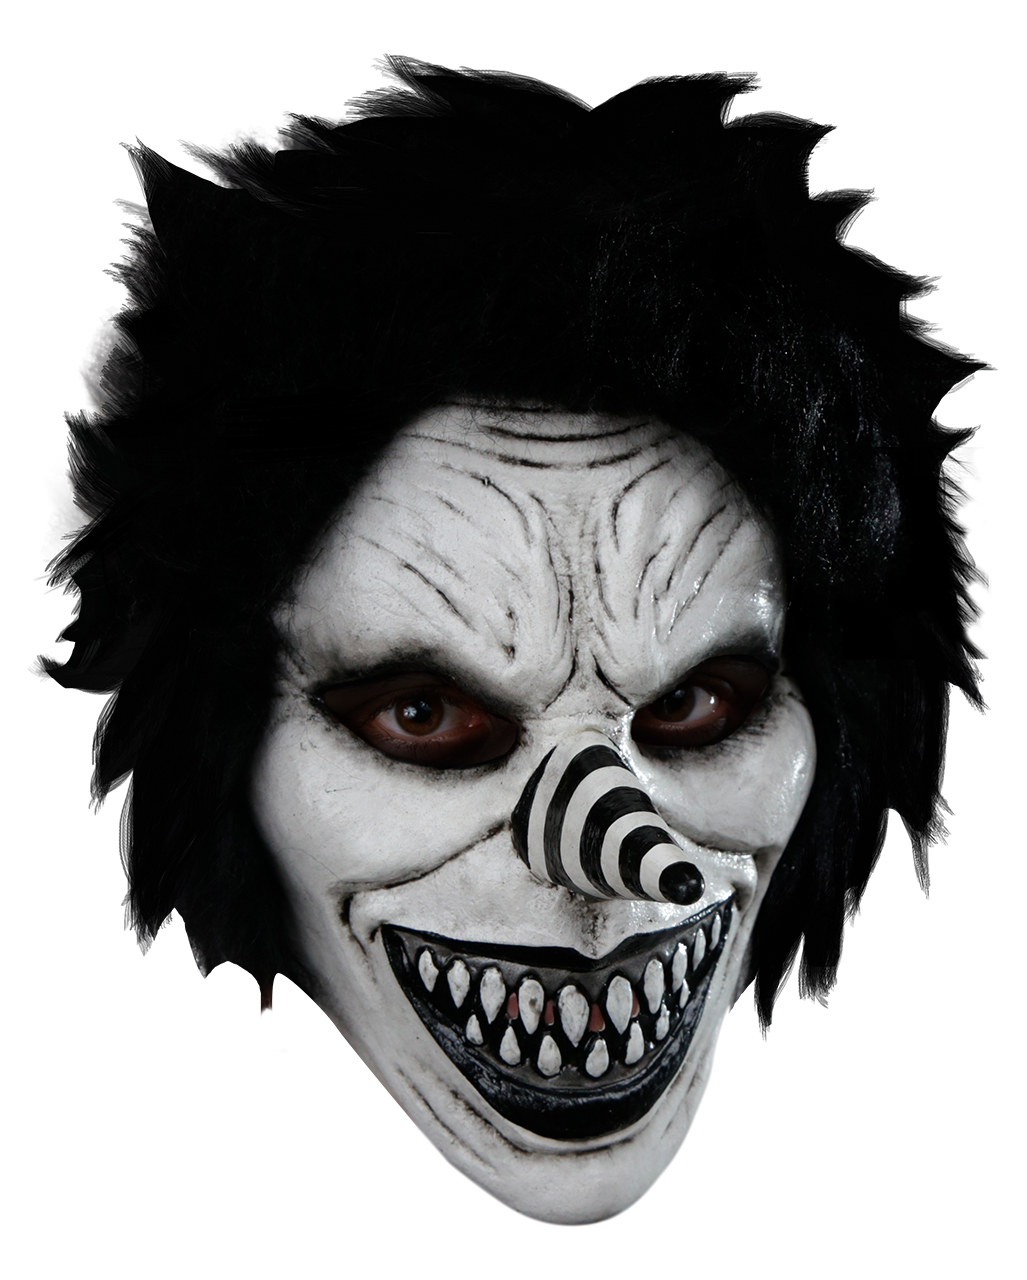 Grinsender Jack Horrorclown Kindermaske für Halloween von Horror-Shop.com